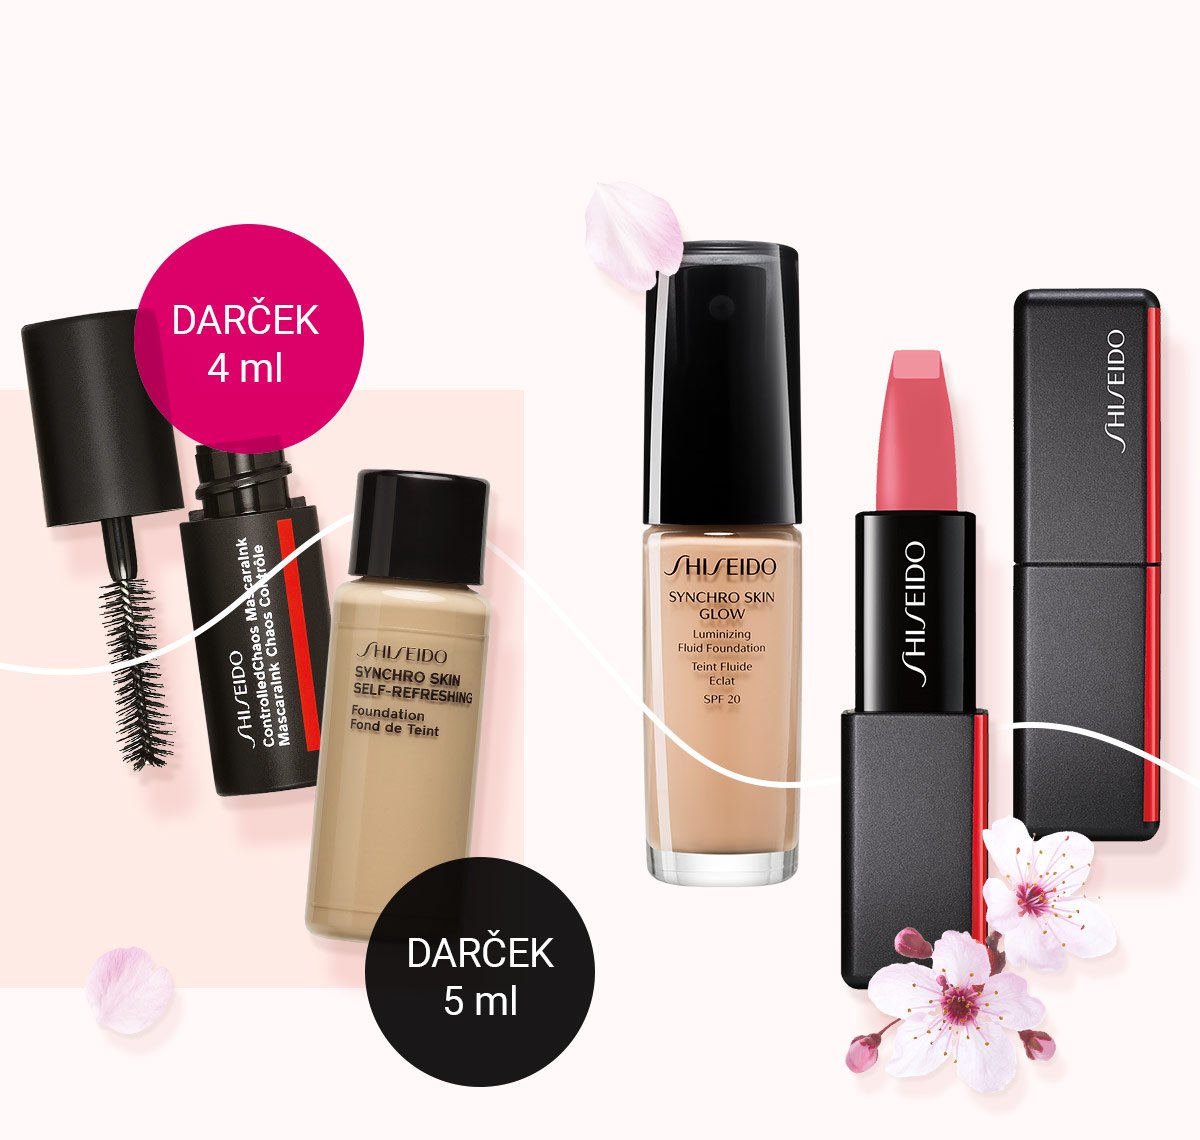 Objednajte si produkty od Shiseido aspoň za 69 € a dostanete od nás ako darček riasenku a make-up od rovnakej značky.